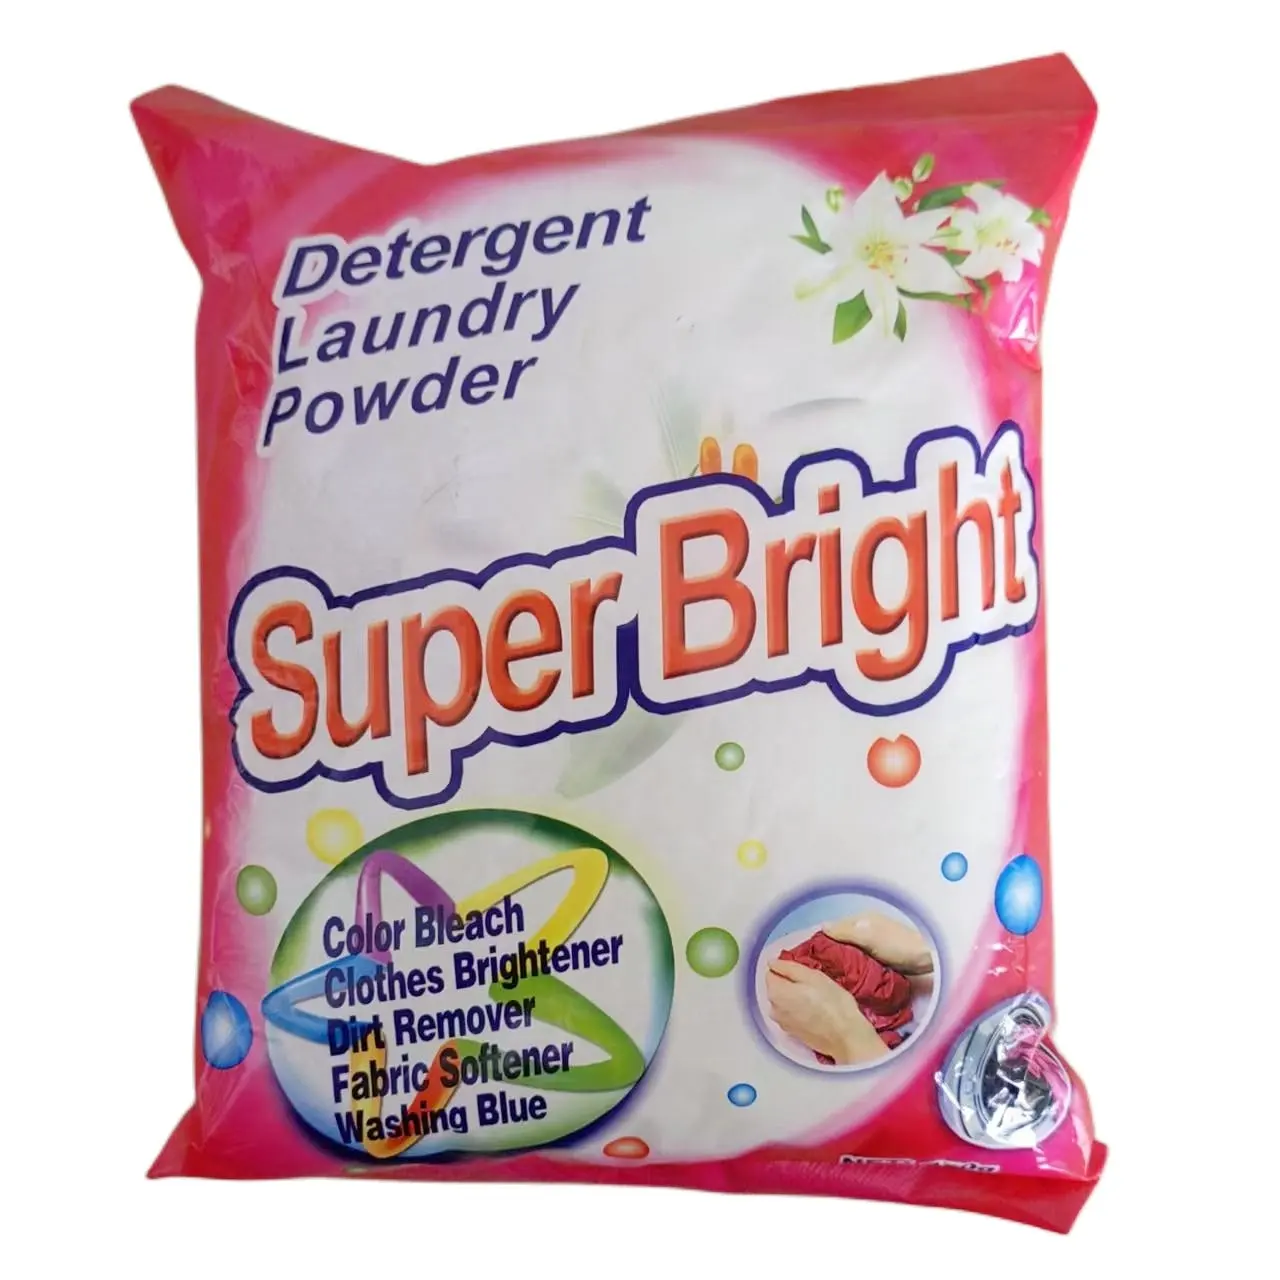 Ever Bright Marken waschpulver für den pakistani schen Markt